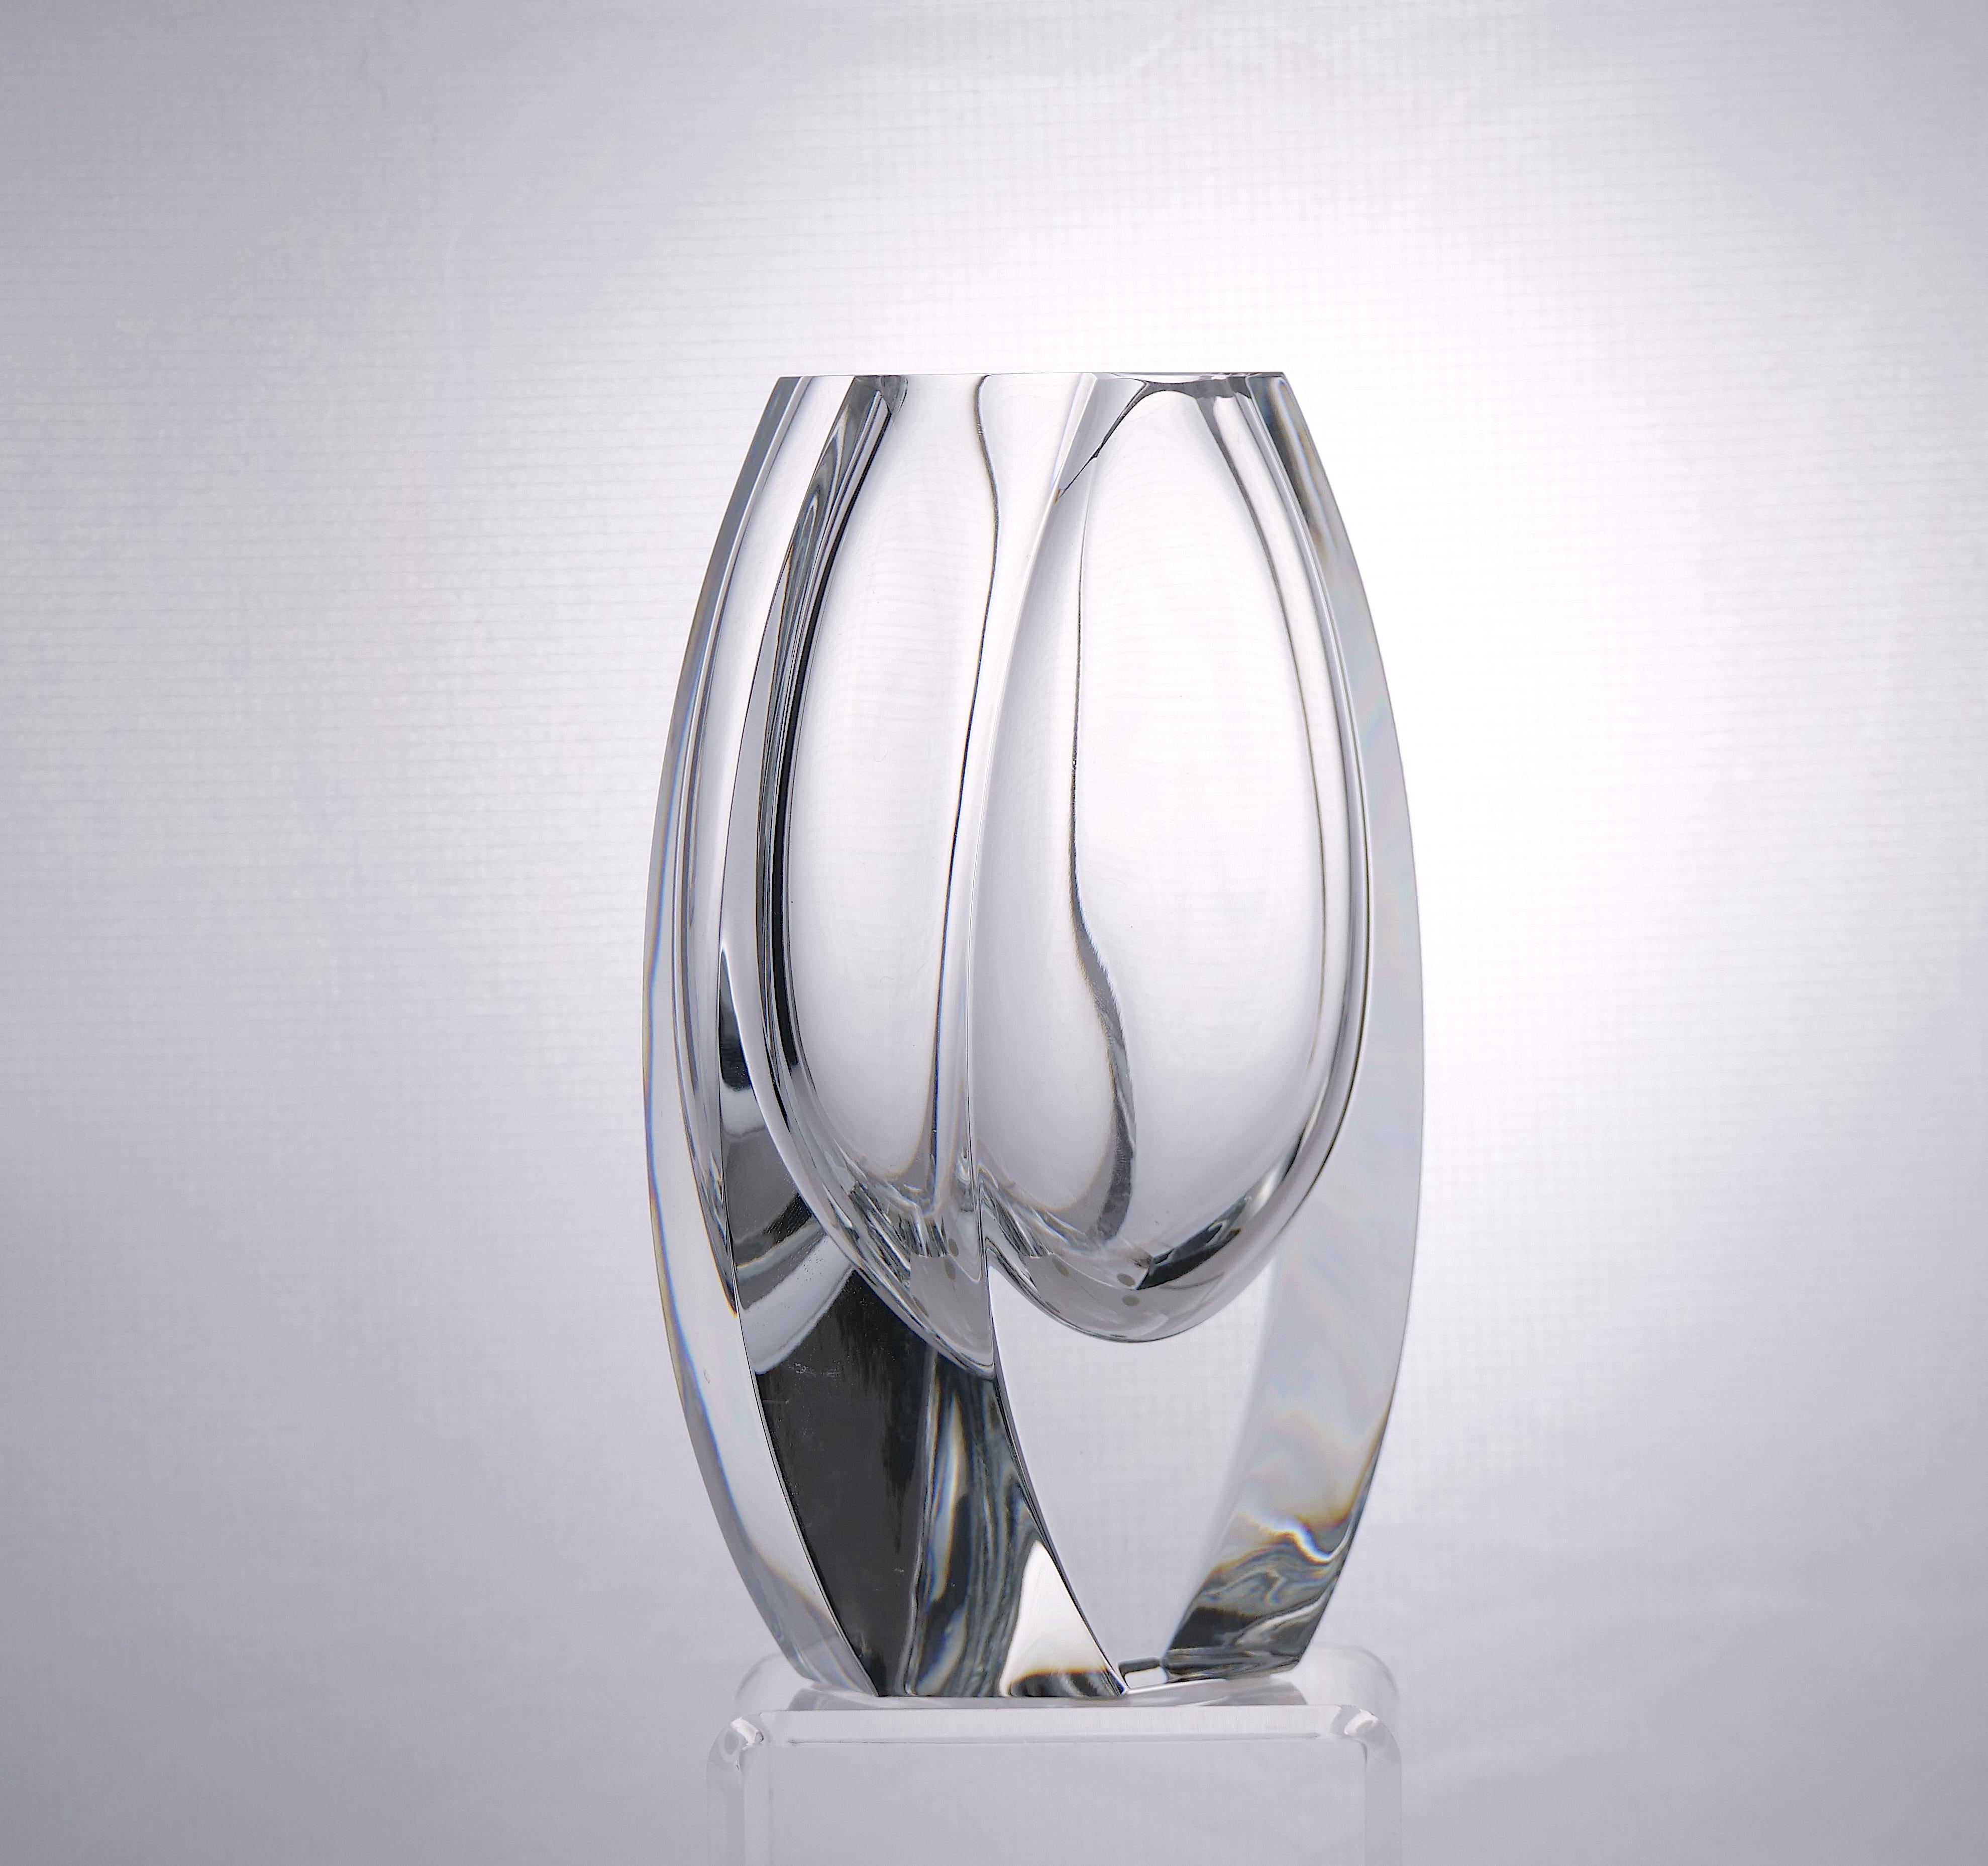 Schöne und elegante französische Baccarat geschliffenem Kristall Art-Deco-Stil dekorative Vase. Das schwere, geschliffene Kristall verleiht der Vase eine sehr stabile Stabilität und zeichnet sich durch seine klare Linie im Art-Déco-Stil aus, die